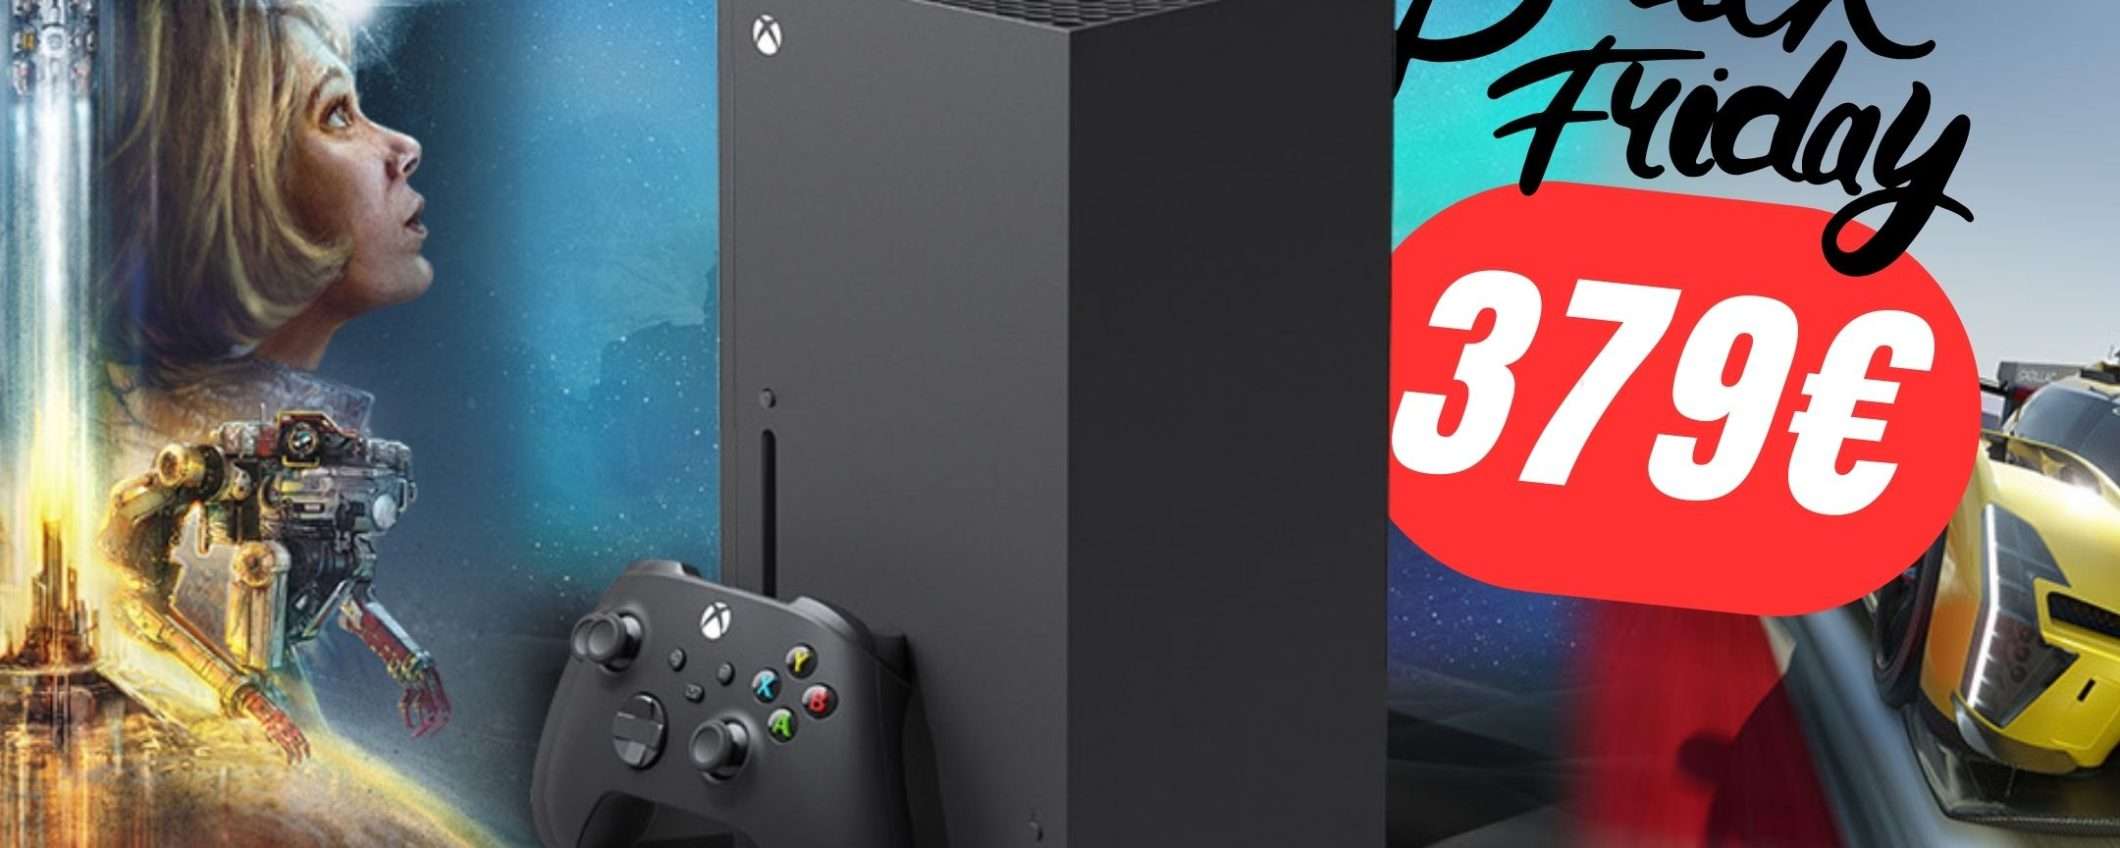 Xbox One X a soli 379€?! Sì, grazie alle offerte Amazon!